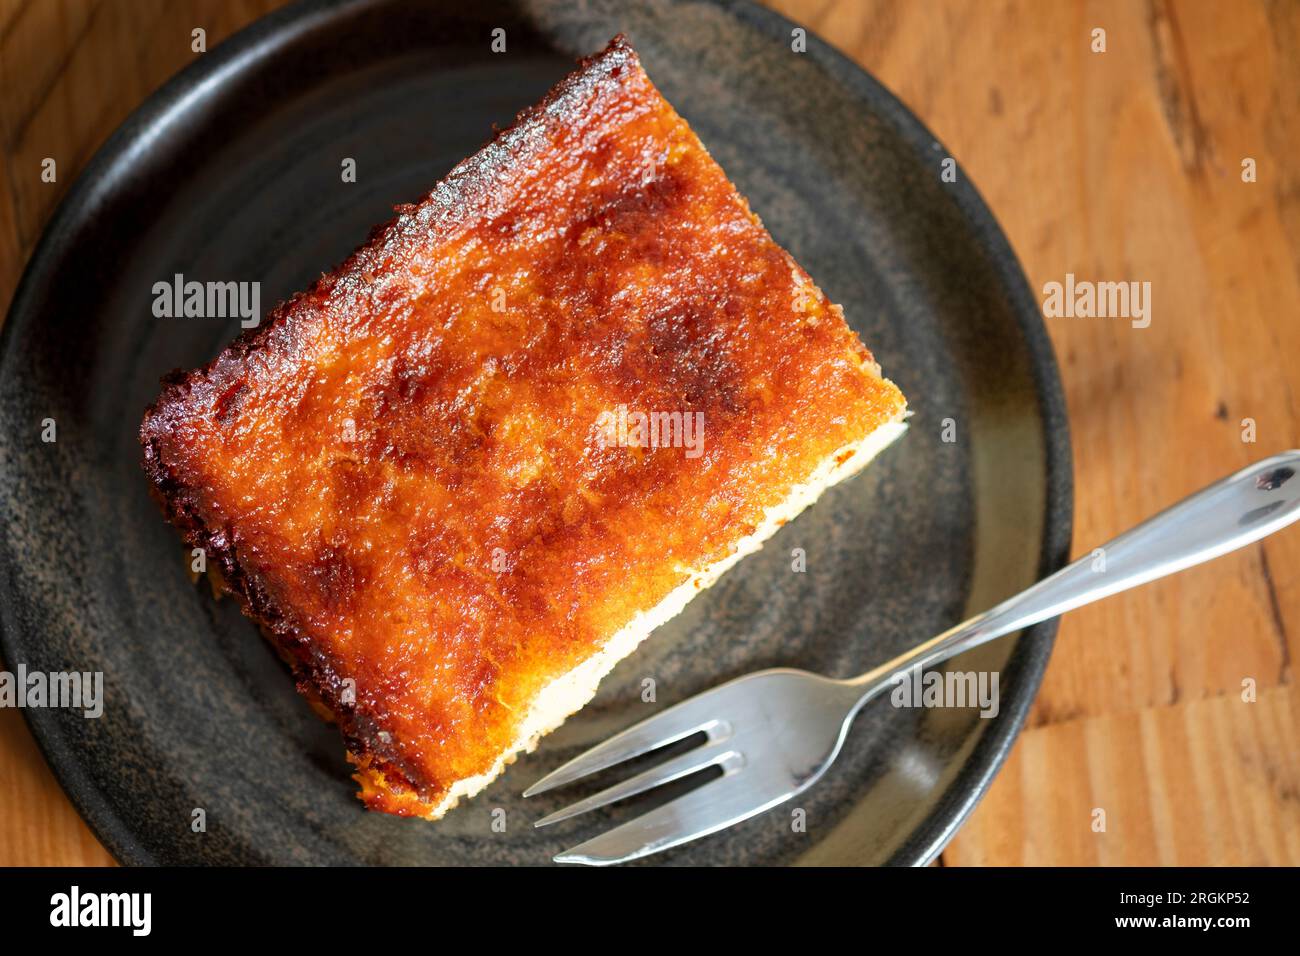 Une portion ou une tranche de tarte à l'orange. C'est une spécialité grecque connue sous le nom de Portokalopita. Il est fait avec de la pâte phyllo et trempé dans un sirop d'orange Banque D'Images